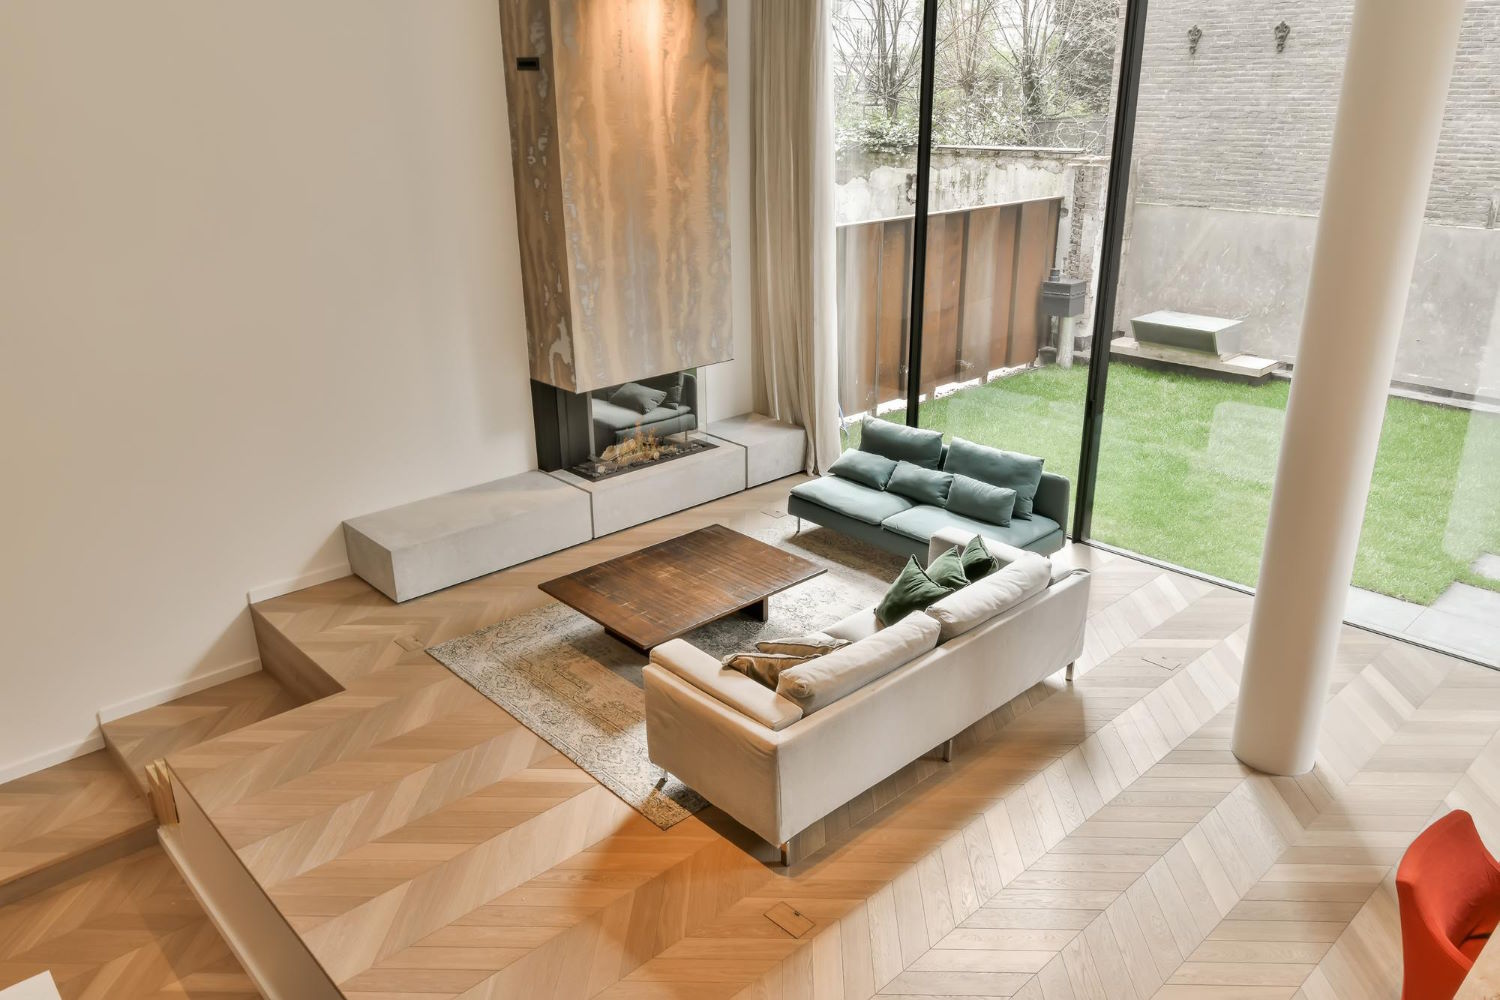 Drewniane deski podłogowe jako doskonałe rozwiązanie dla ogrzewania podłogowego